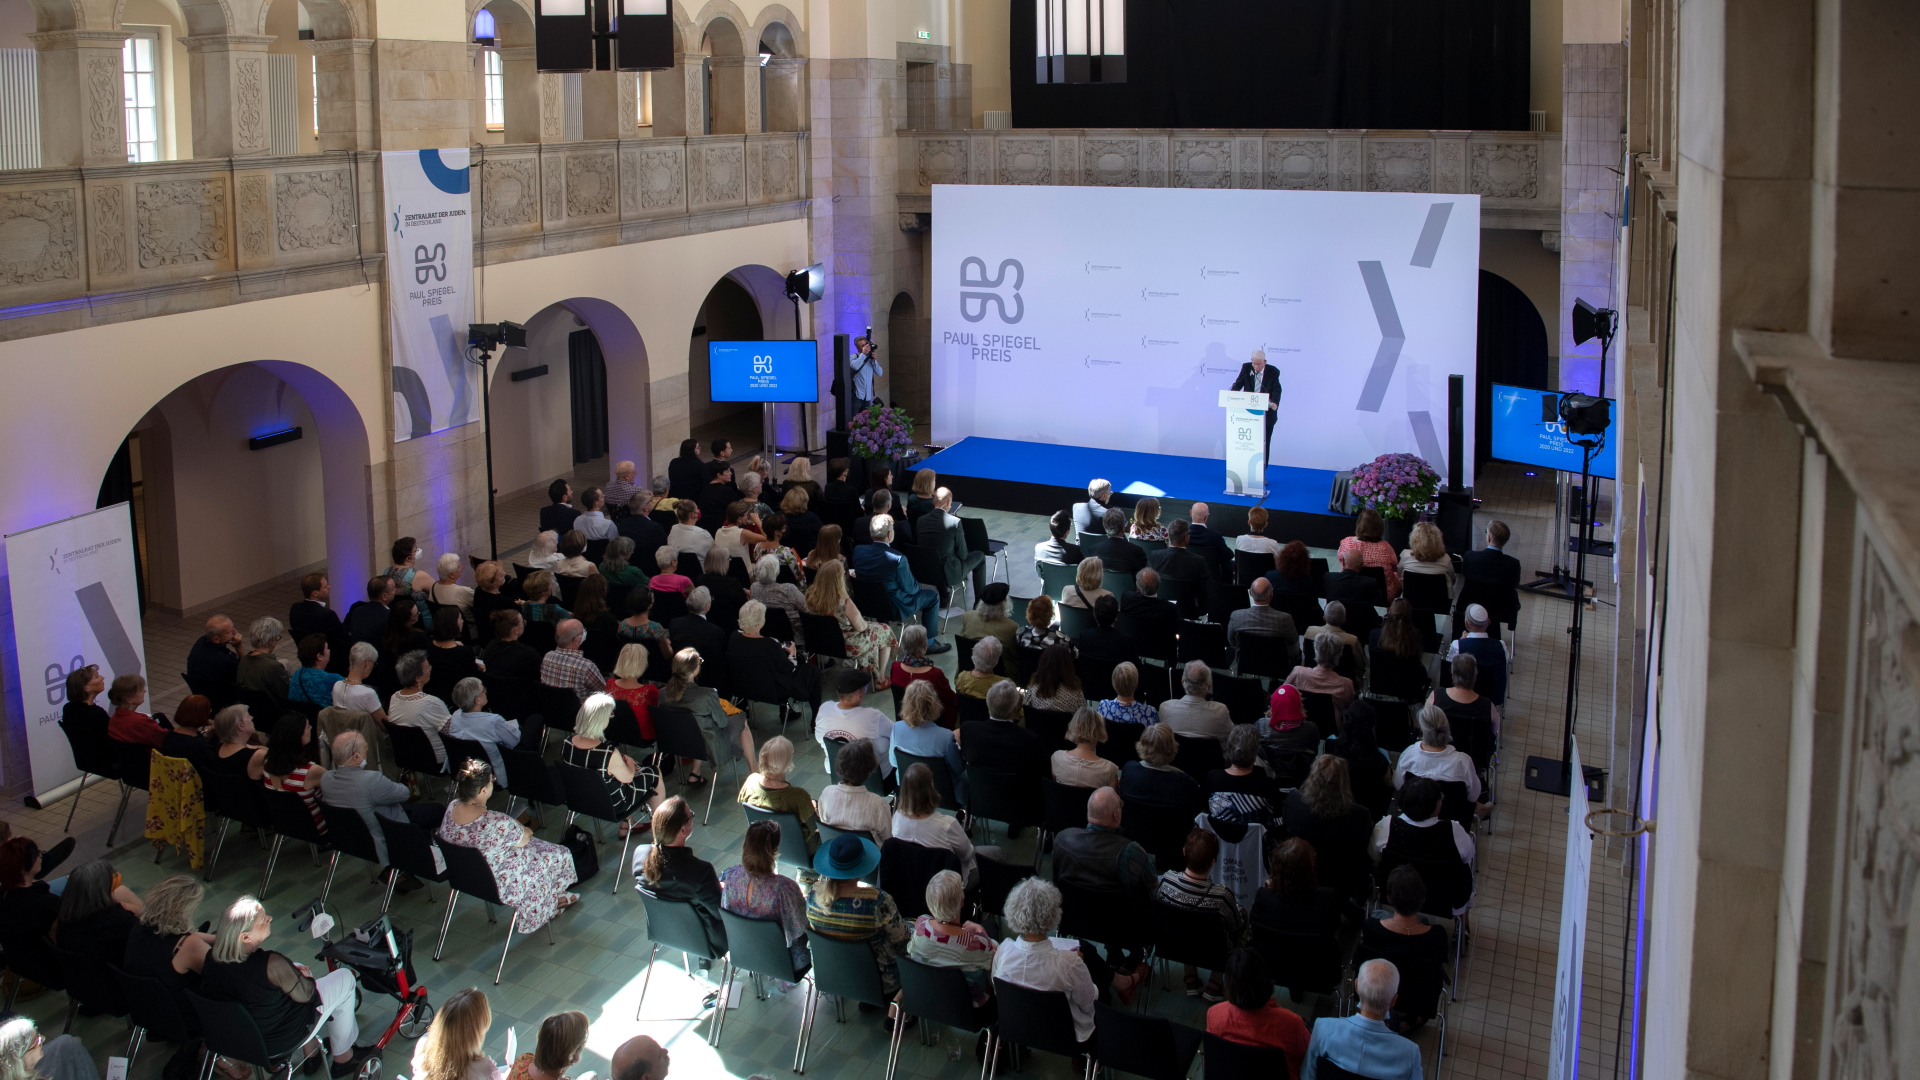 Zahlreiche Gäste verfolgen die Verleihung des Paul-Spiegel-Preises in Berlin | dpa